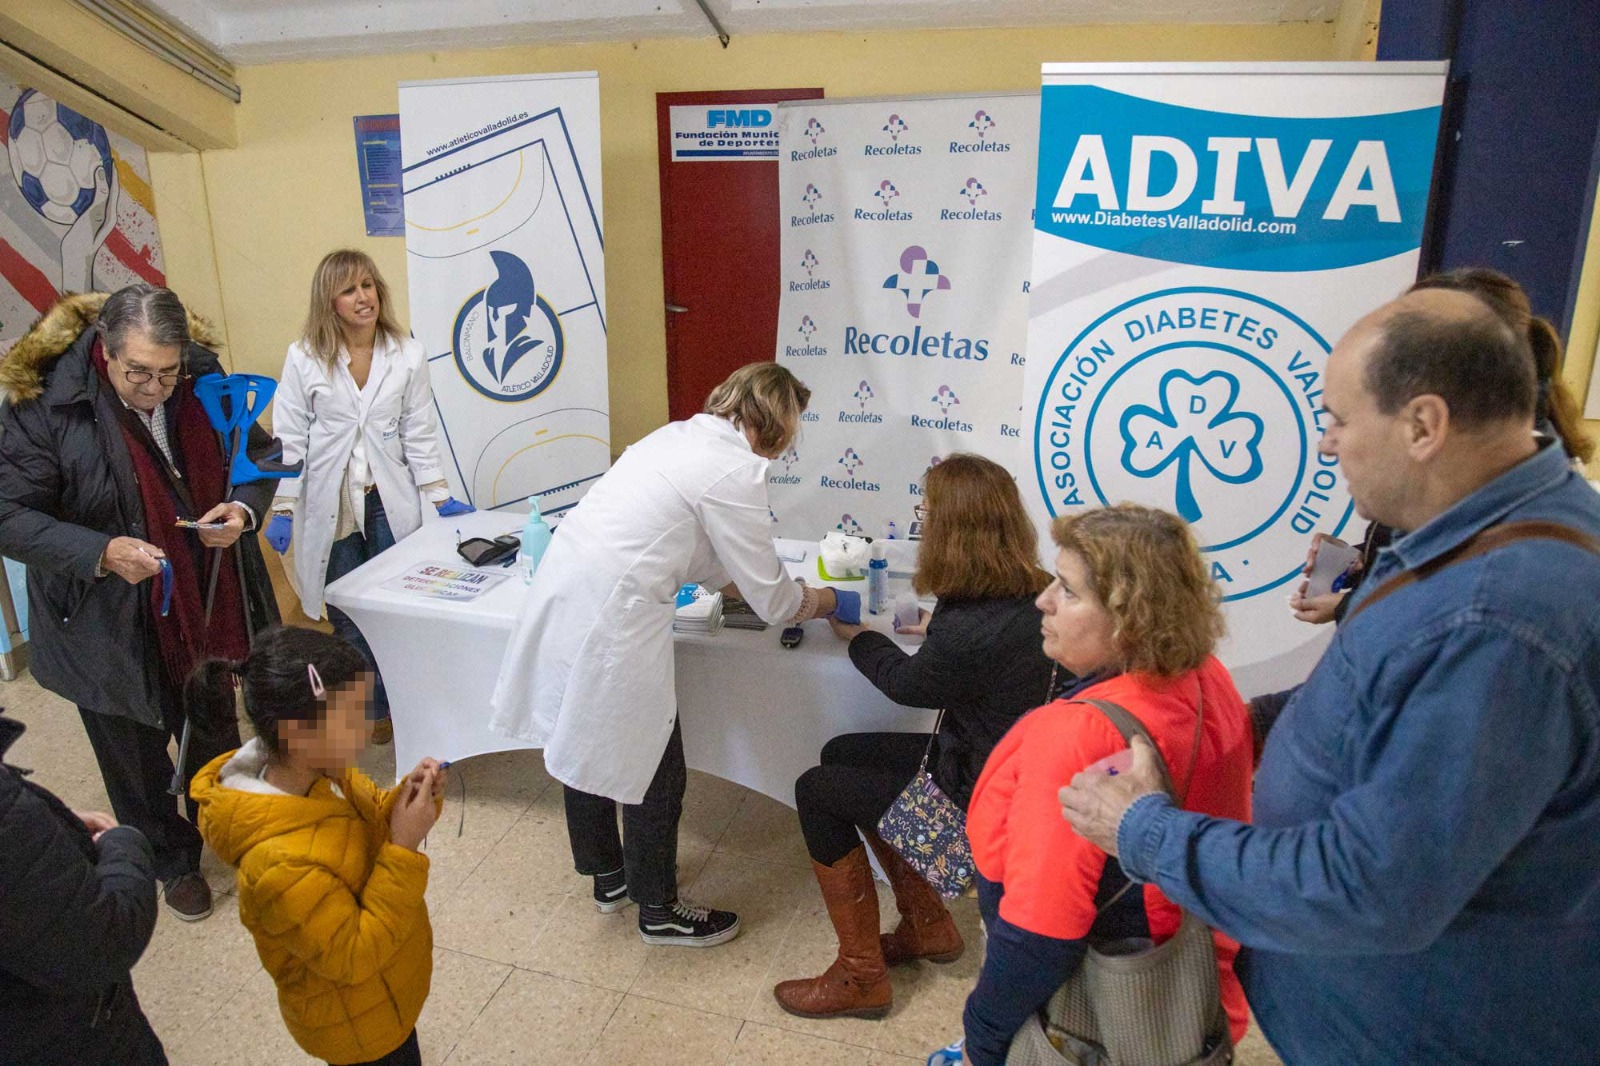 Buena acogida a la actividad de concienciación sobre la diabetes celebrada en el partido del Recoletas ante Helvetia Anaitasuna | Galería 12 / 12